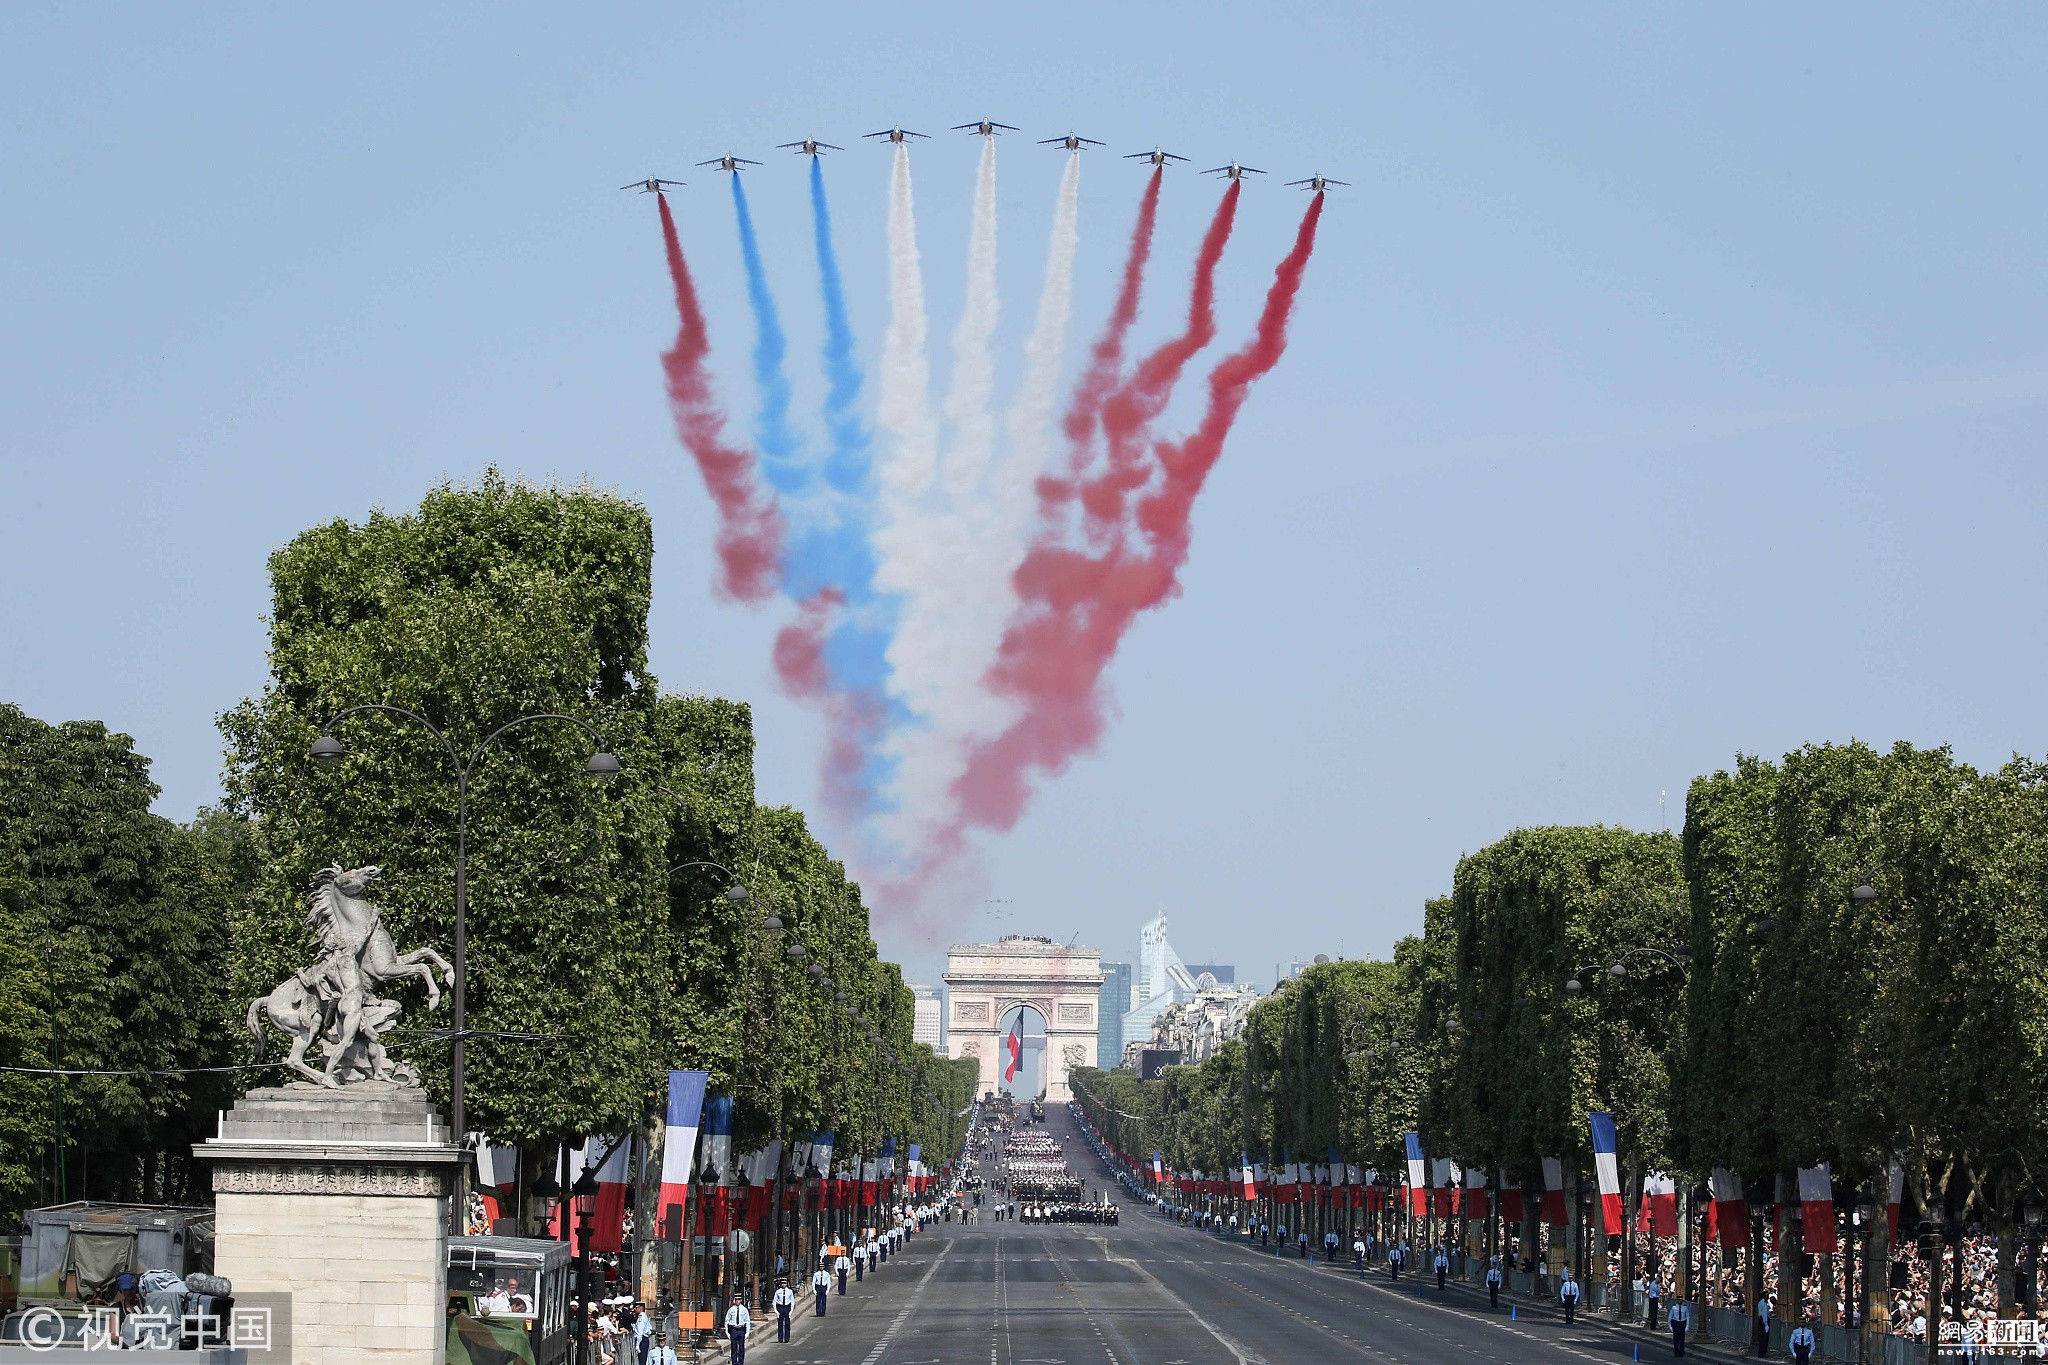 法国国庆日太尴尬 阅兵飞机编队国旗彩烟颜色弄错